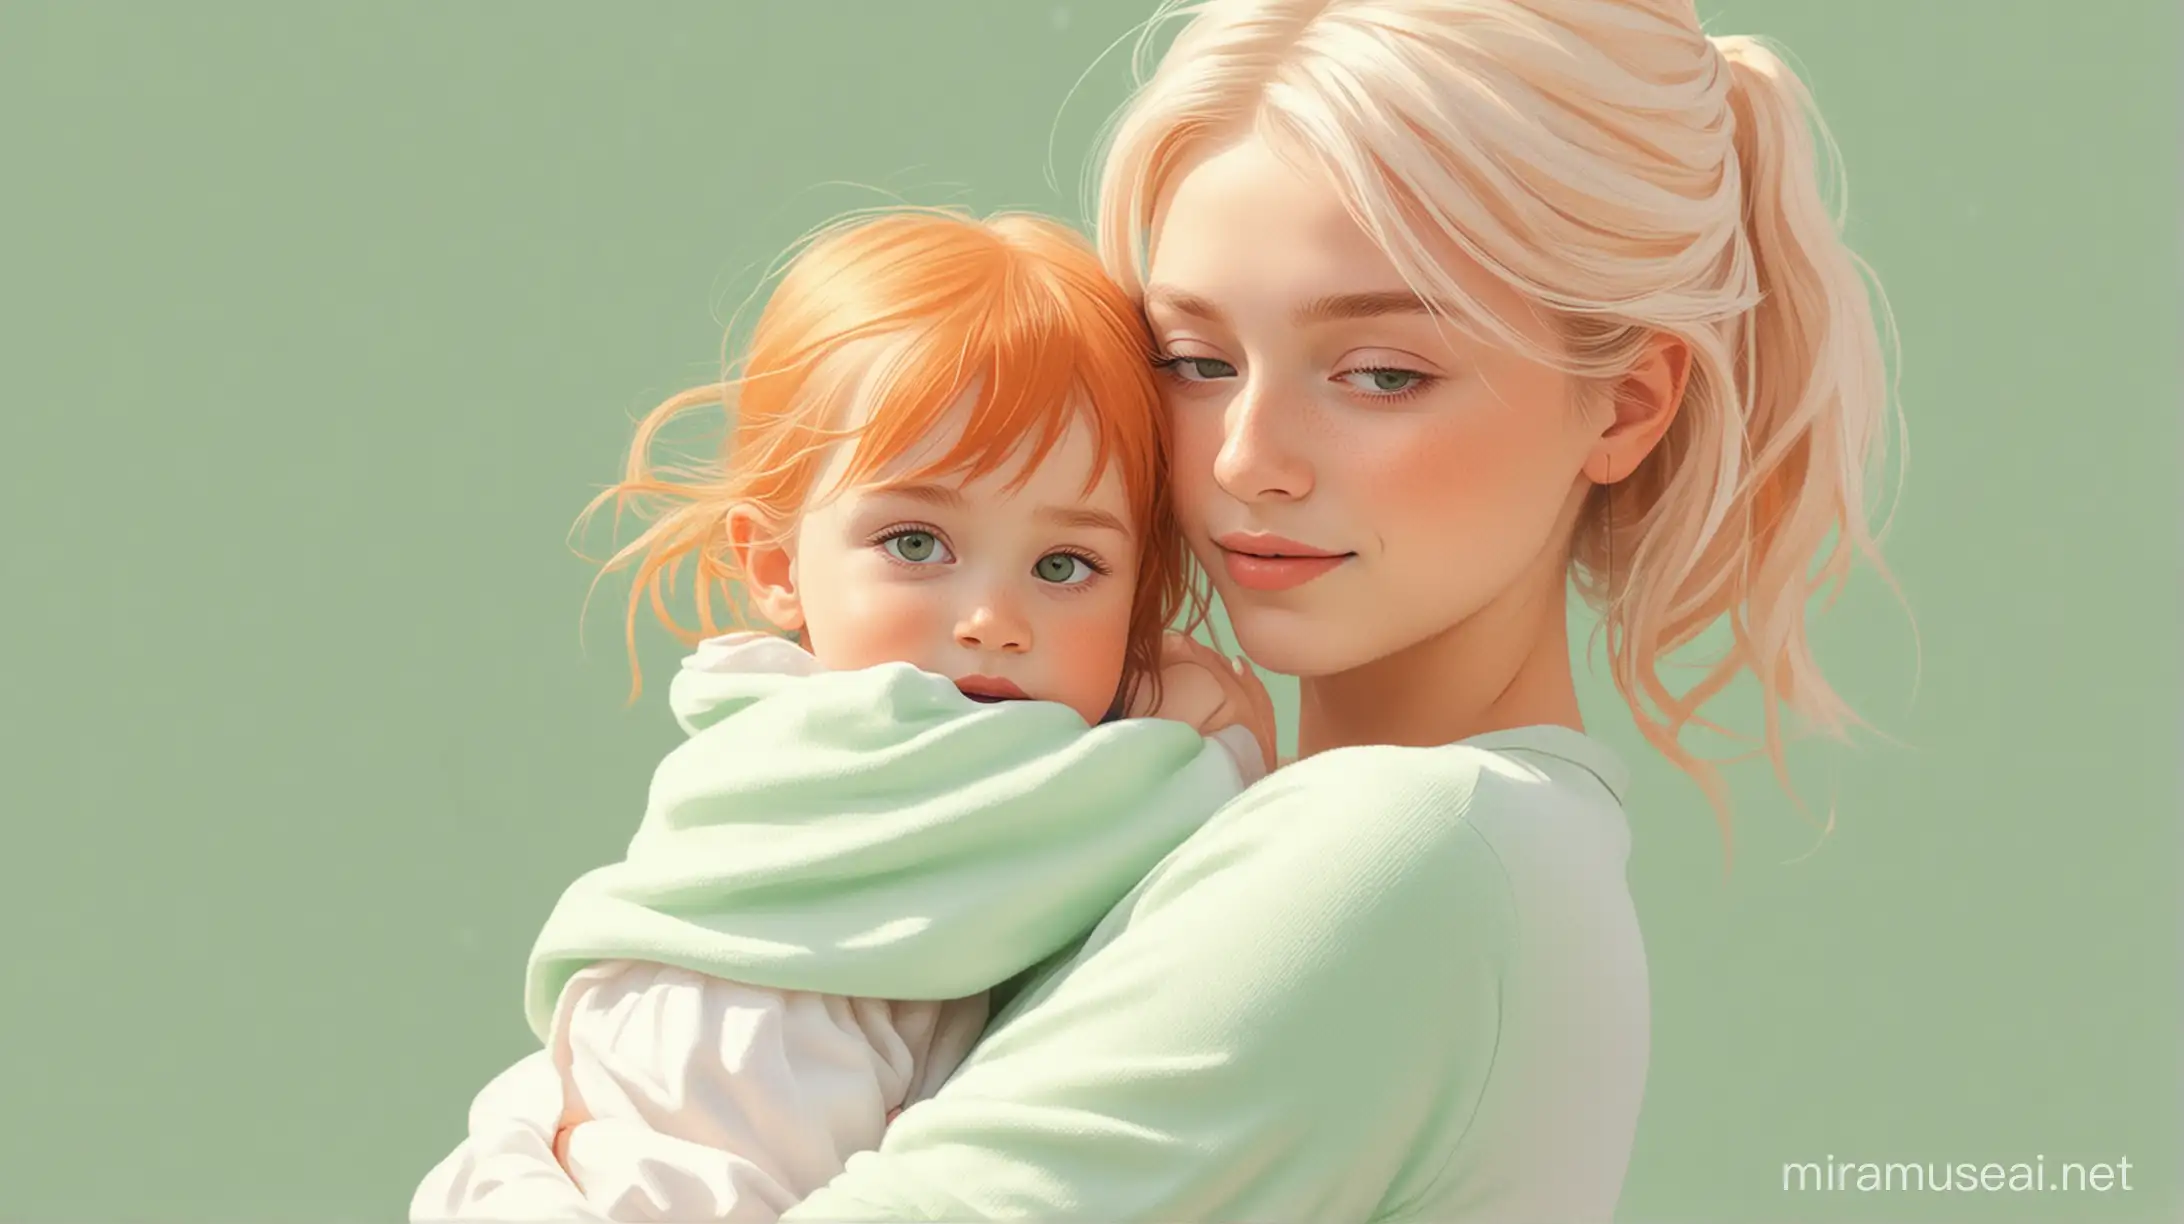 Девушка с маленьким ребёнком на руках. Мультипликационный стиль. Пастельные цвета. Зеленый, оранжевый, белый